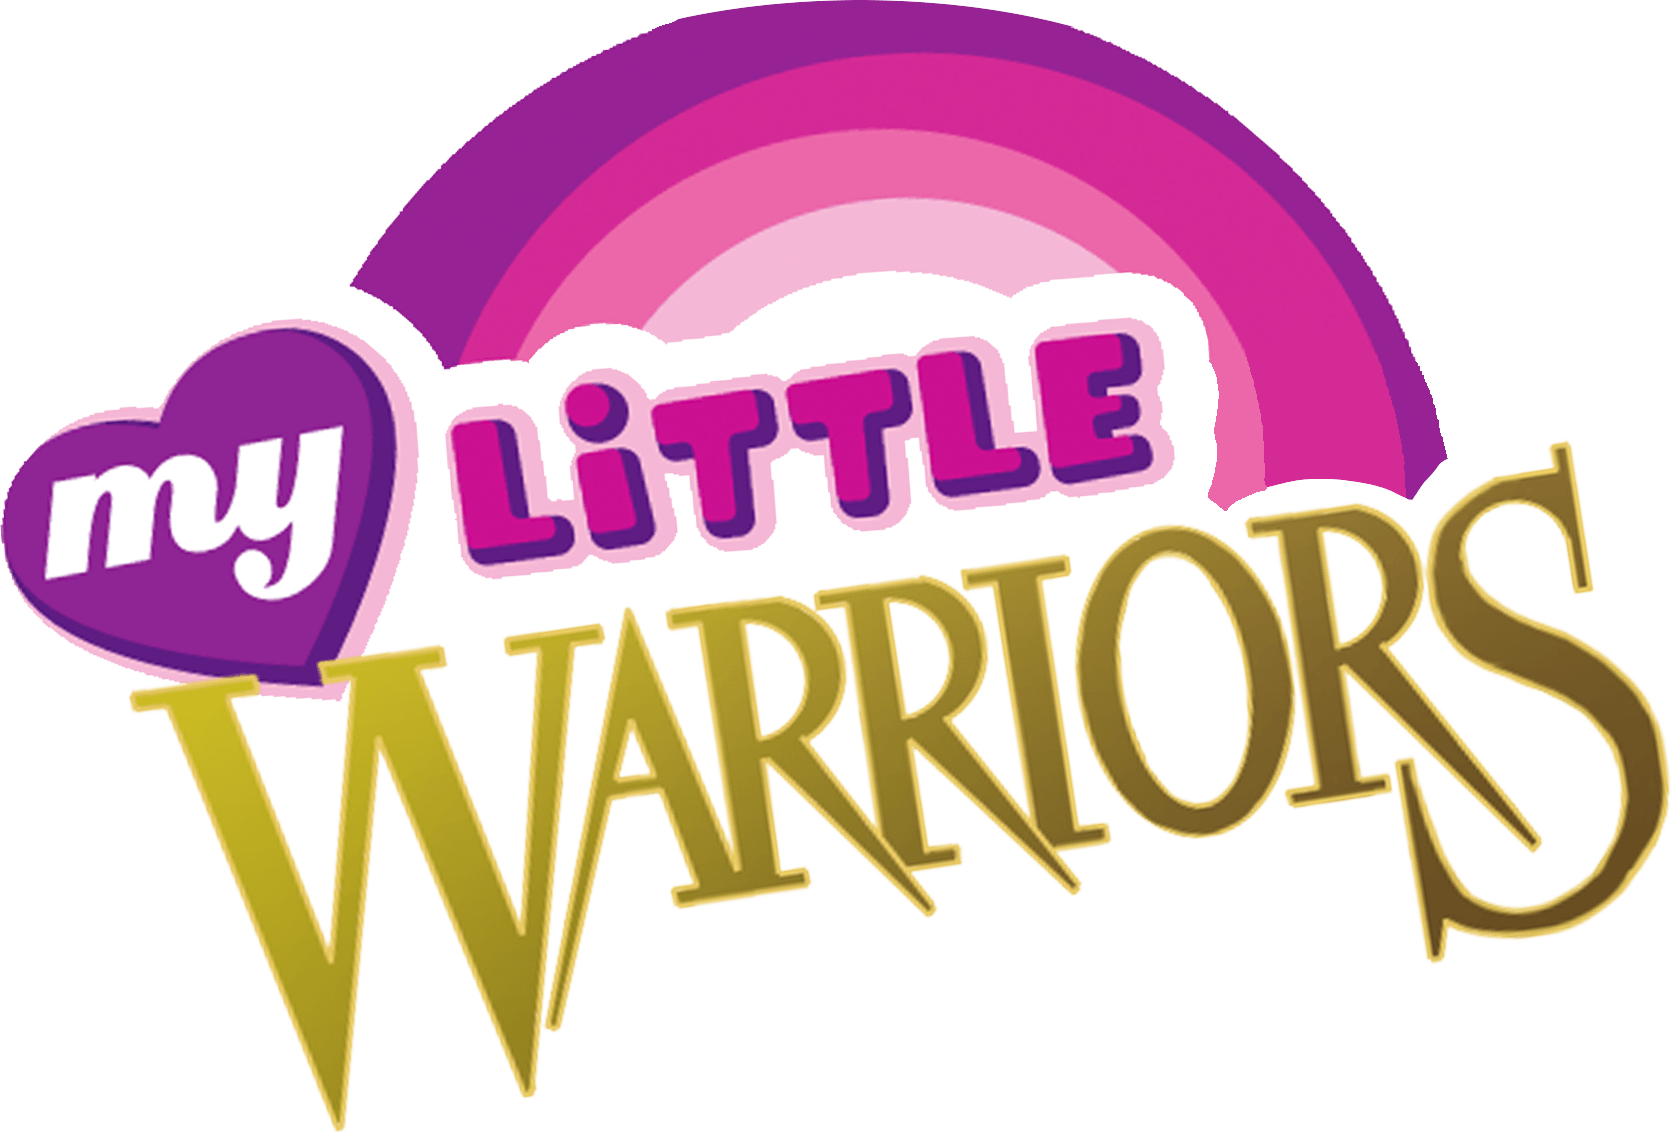 Warrior Cats Logo - Warriors Wallpaper Logo Png Images